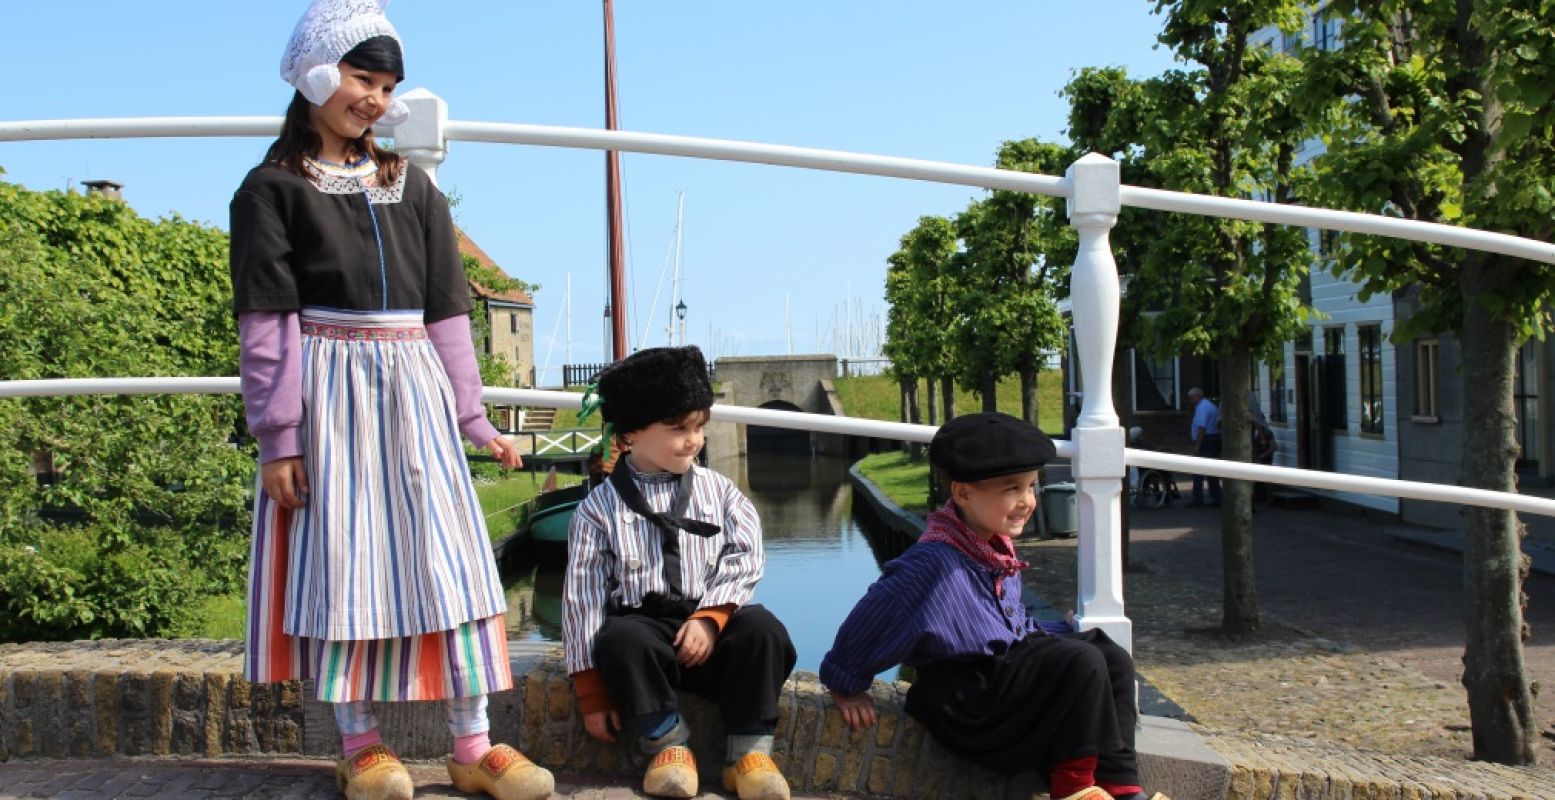 Een dagje terug in de tijd! Anna, Savi en Mika in klederdracht in het Zuiderzeemuseum Enkhuizen. Foto: DagjeWeg.NL.